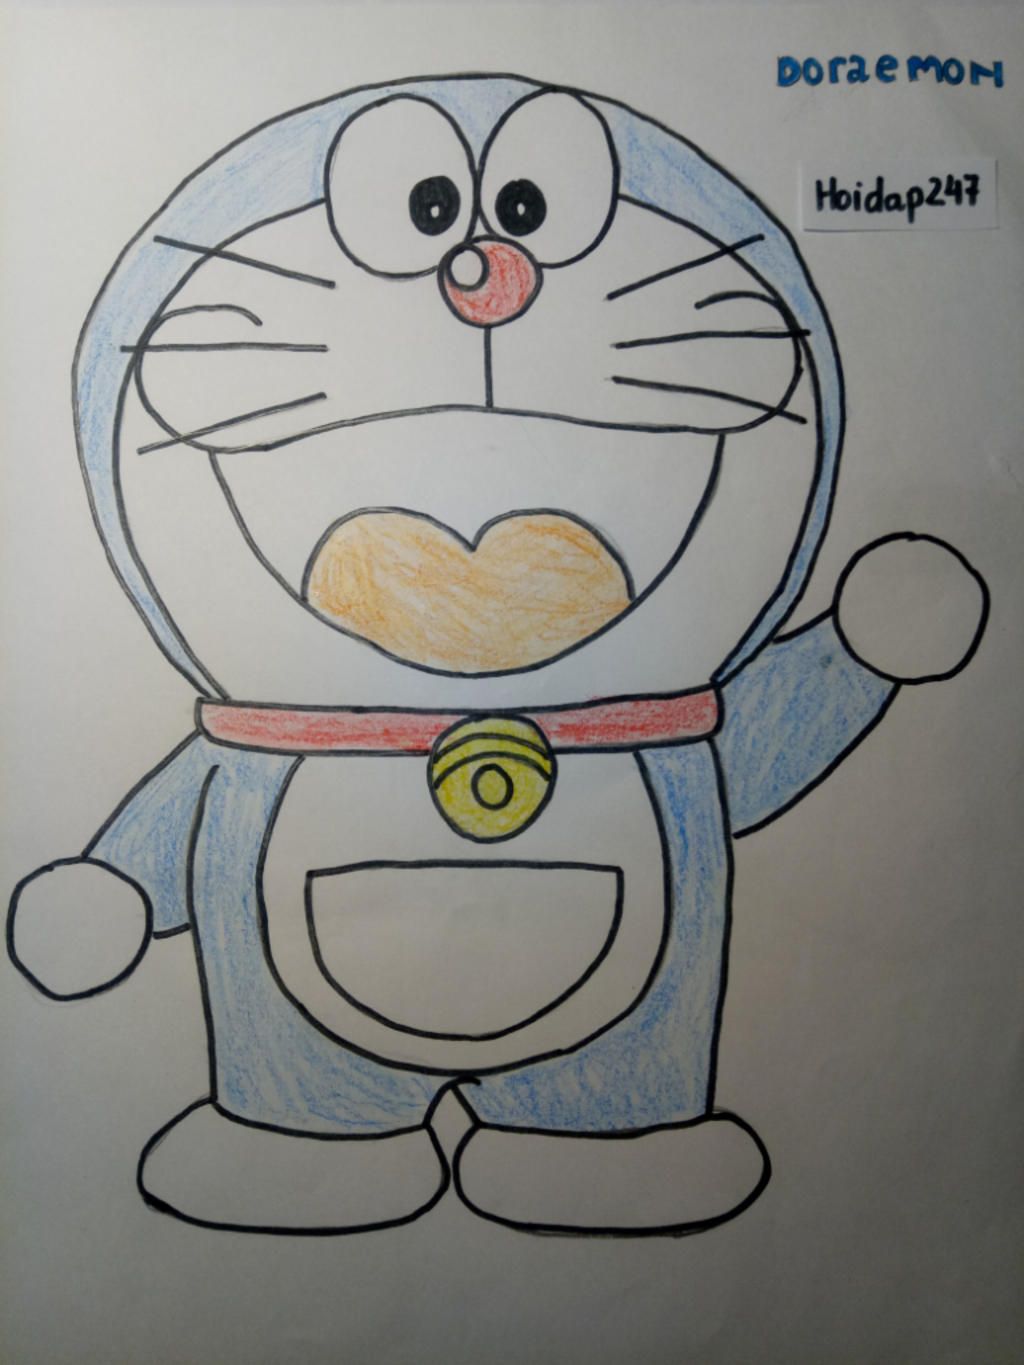 Vẽ tranh Doraemon là một trải nghiệm thú vị cho những người yêu thích nghệ thuật. Nếu bạn là một trong số đó, đừng bỏ qua cơ hội này để khám phá và tạo ra những tác phẩm độc đáo và đẹp mắt.